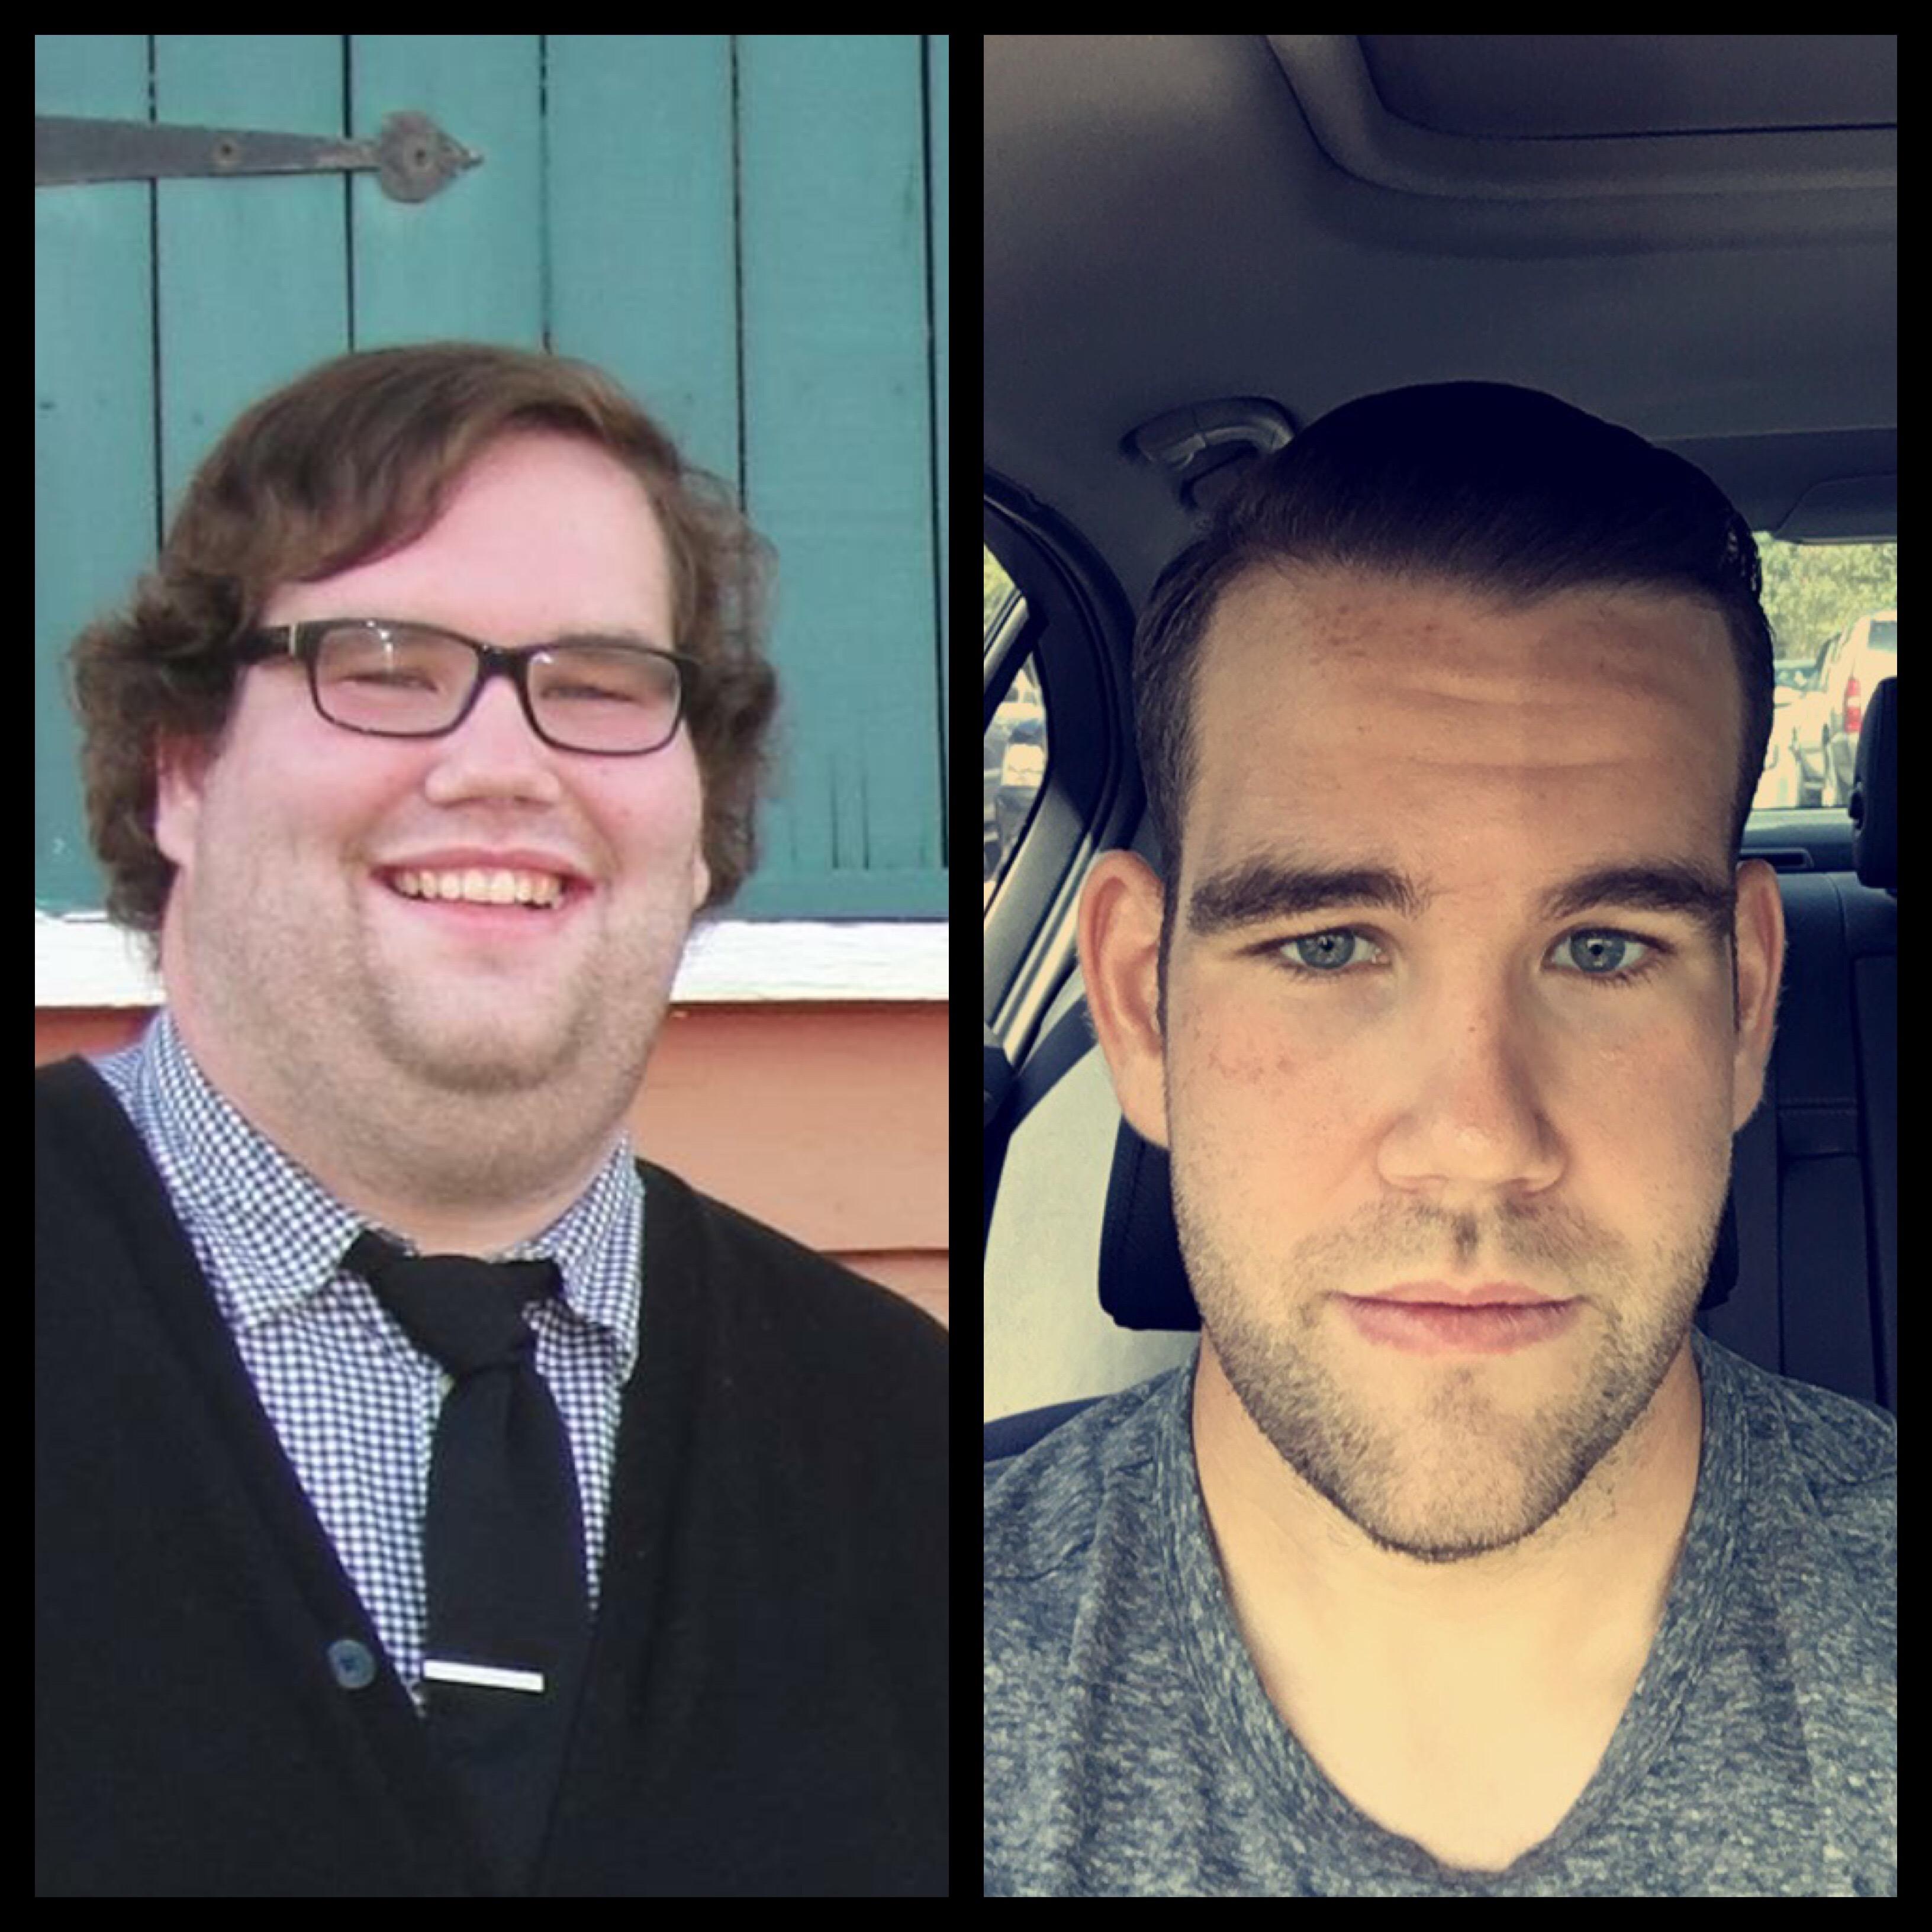 Сильно изменился за год. Люди изменившие внешность. Люди, которые изменились внешне. Лицо до и после похудения. Изменение внешности с возрастом.